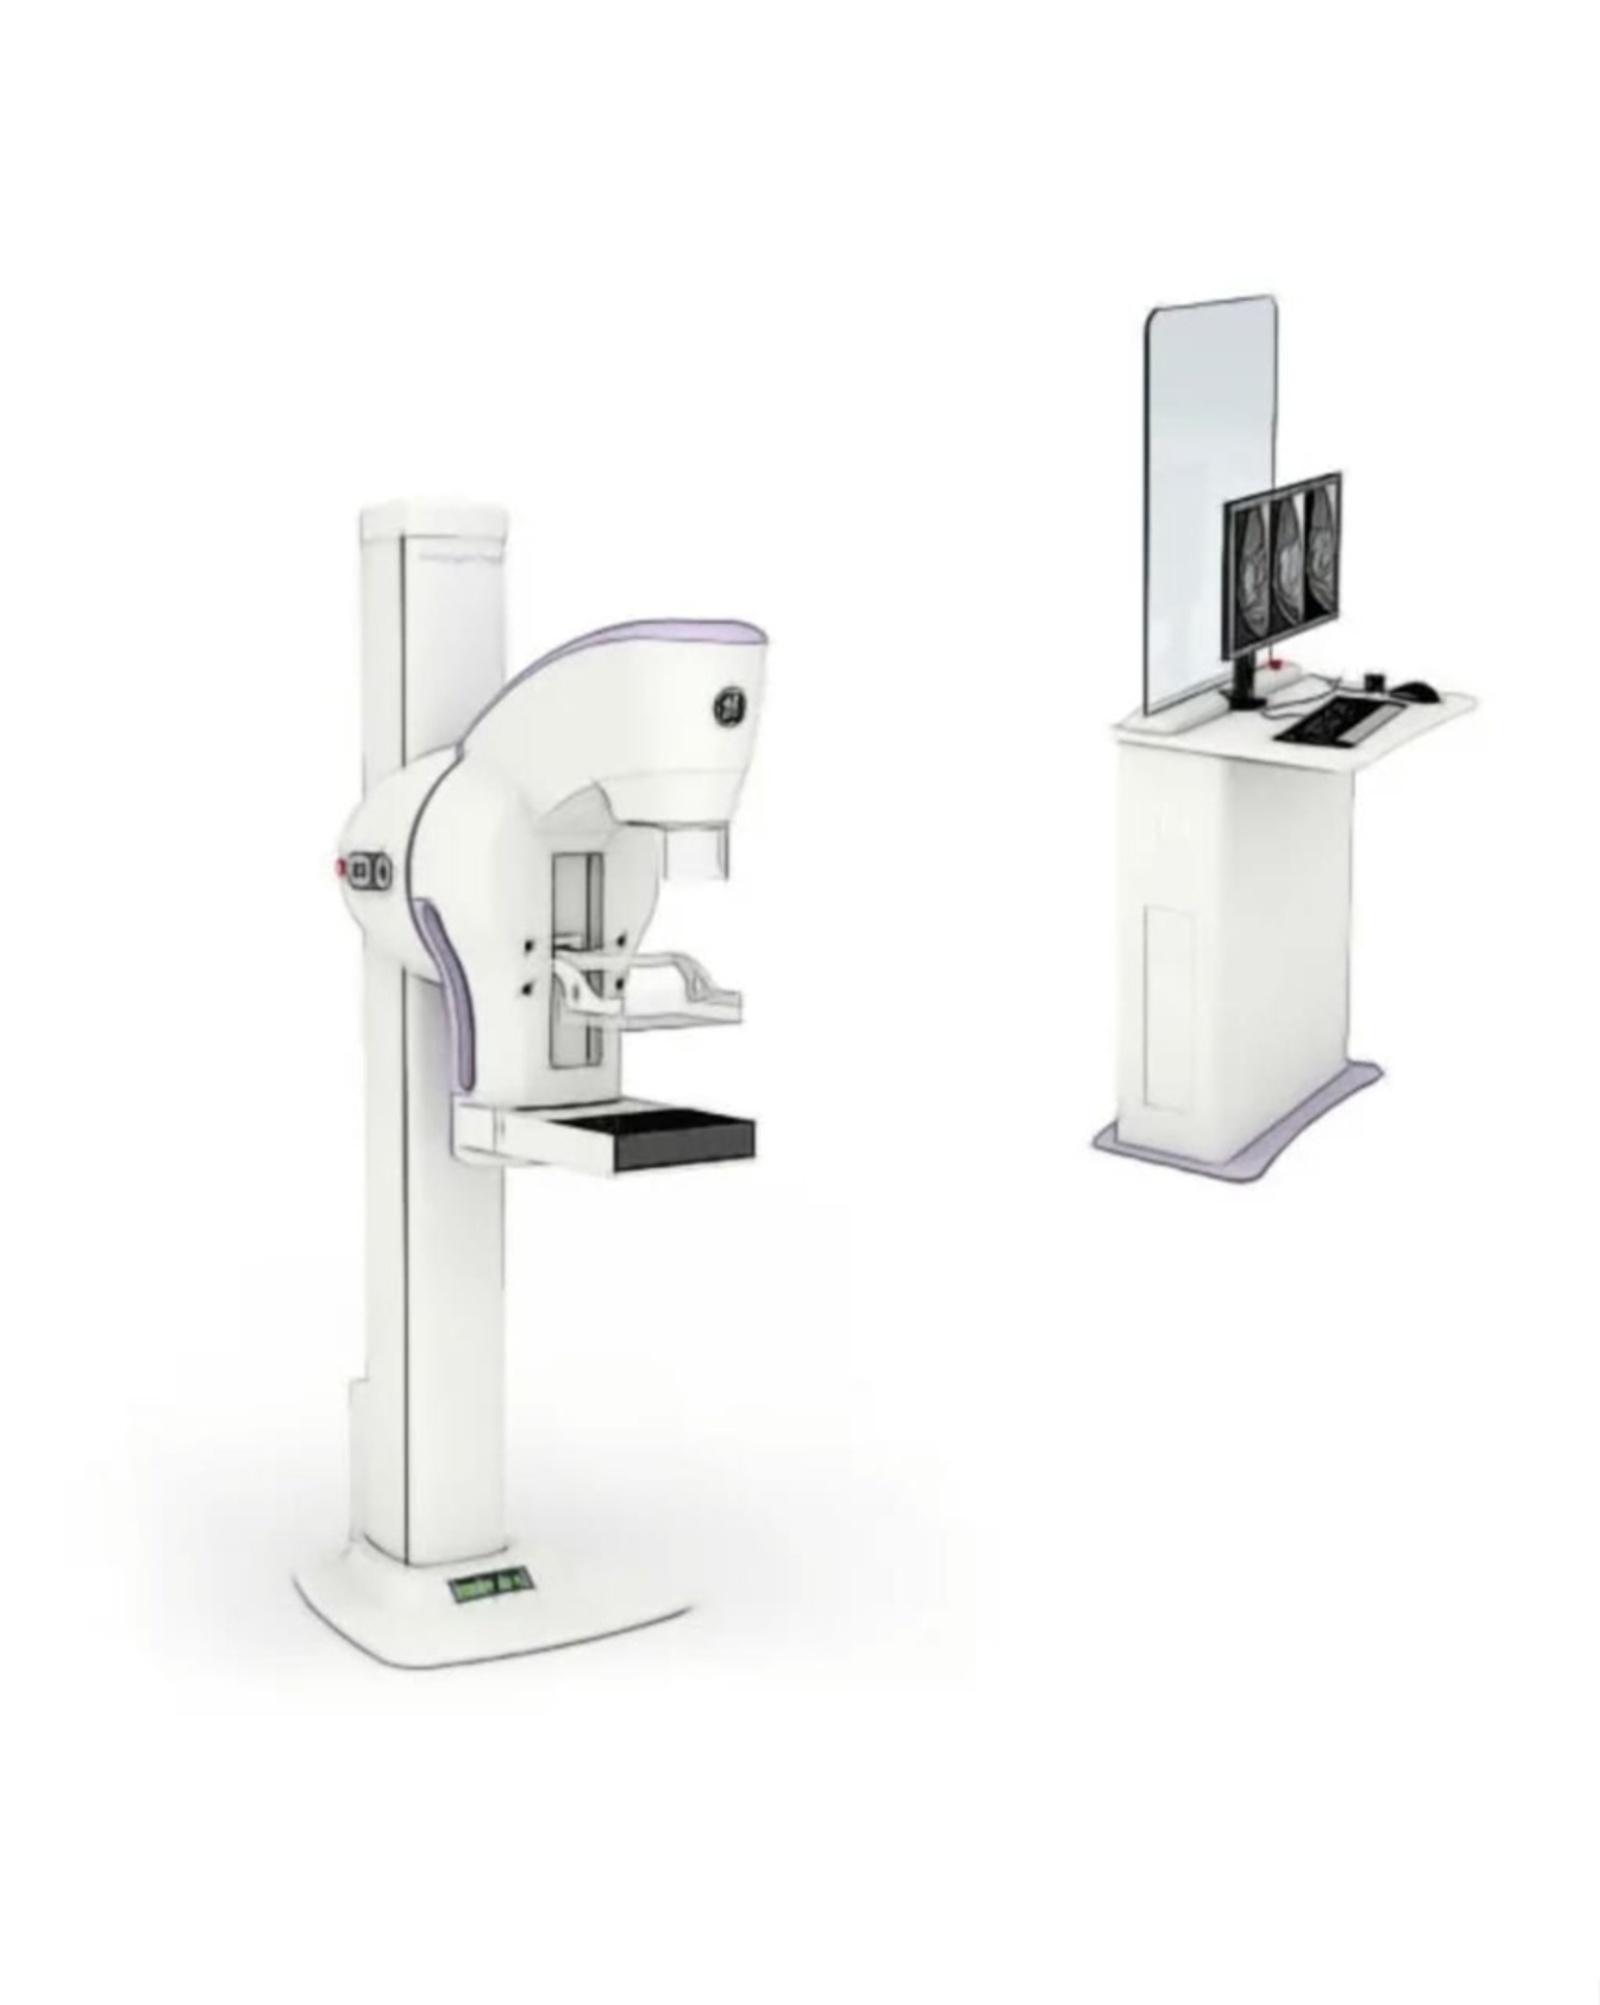 Татышлинская ЦРБ получила новый специализированный рентгенодиагностический аппарат - цифровой маммограф